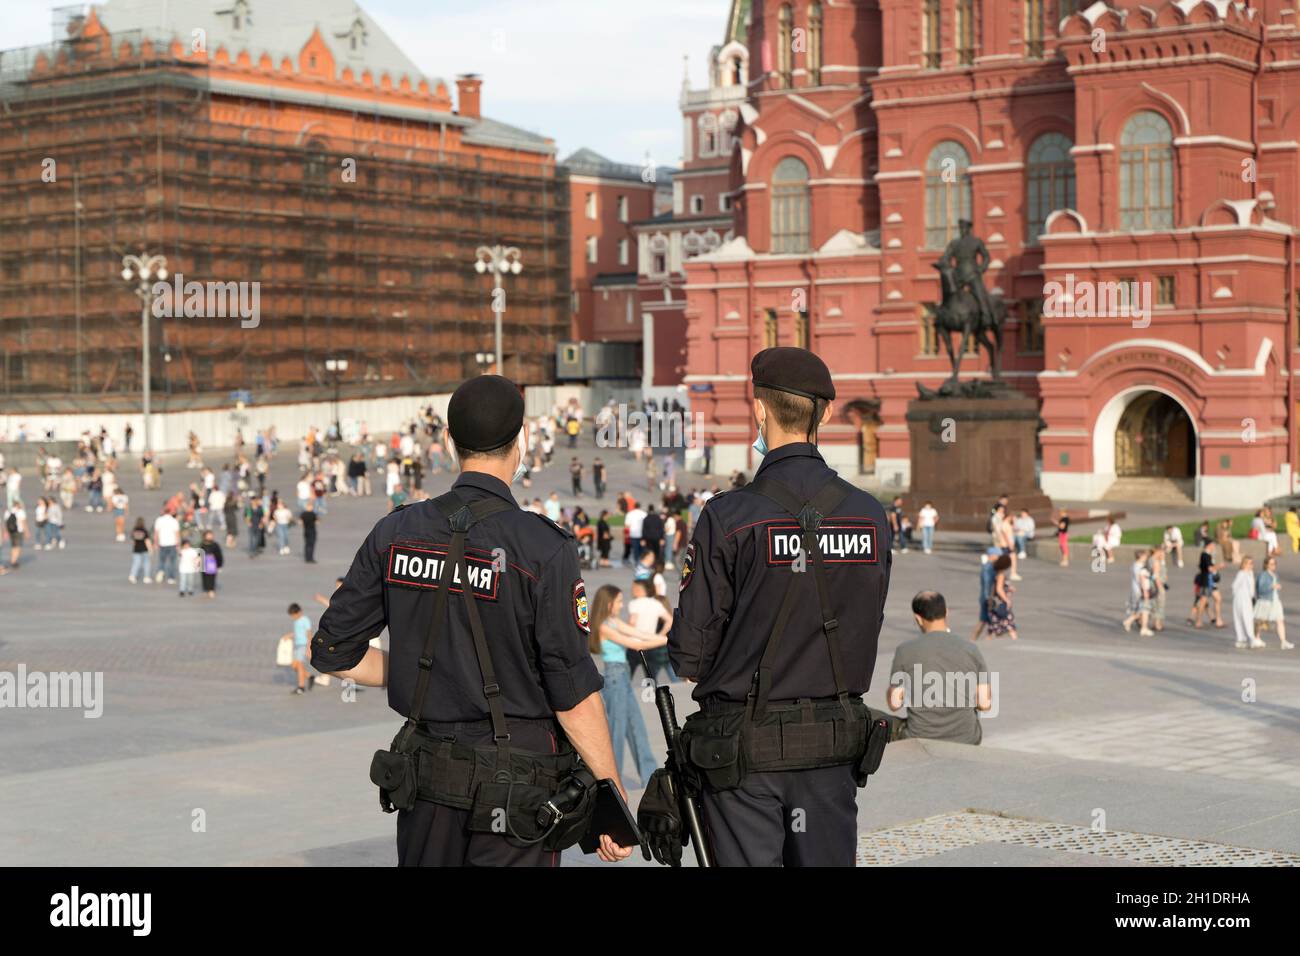 Mosca, Russia - 18 ottobre 2021: Polizia di Mosca in Piazza Manezhnaya. Uniformi di pattuglia della polizia in Russia. Foto di alta qualità Foto Stock